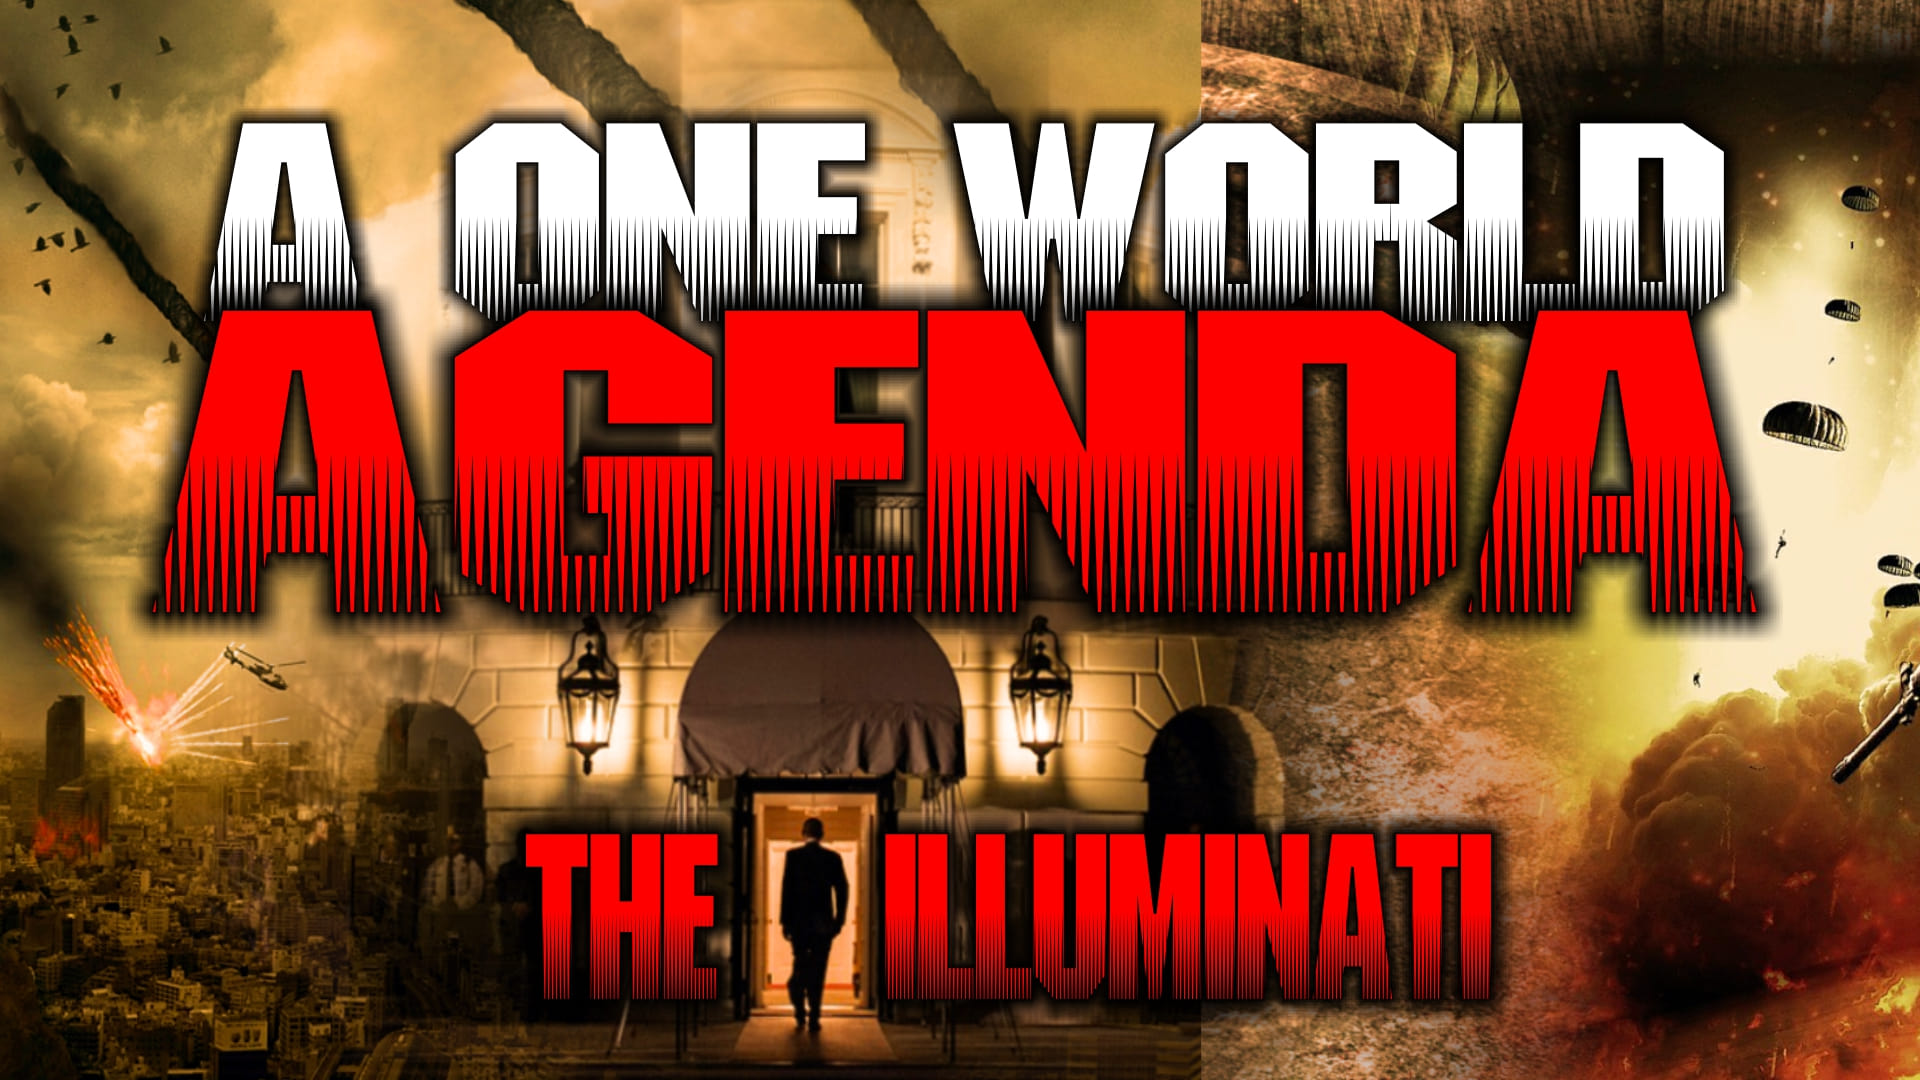 One World Agenda: The Illuminati 2015 123movies